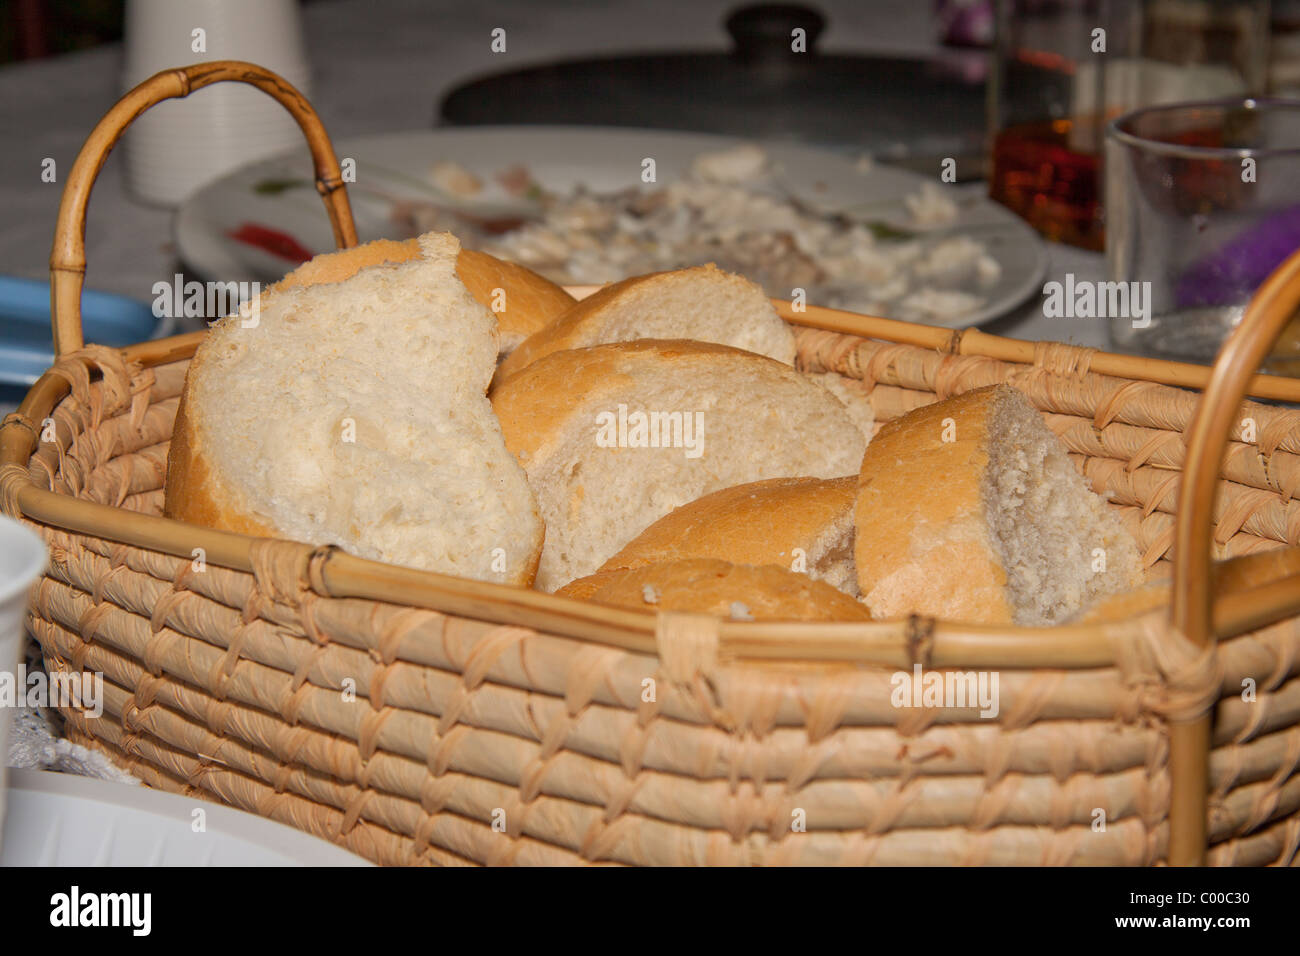 Deslice el pan blanco en la cesta Foto de stock